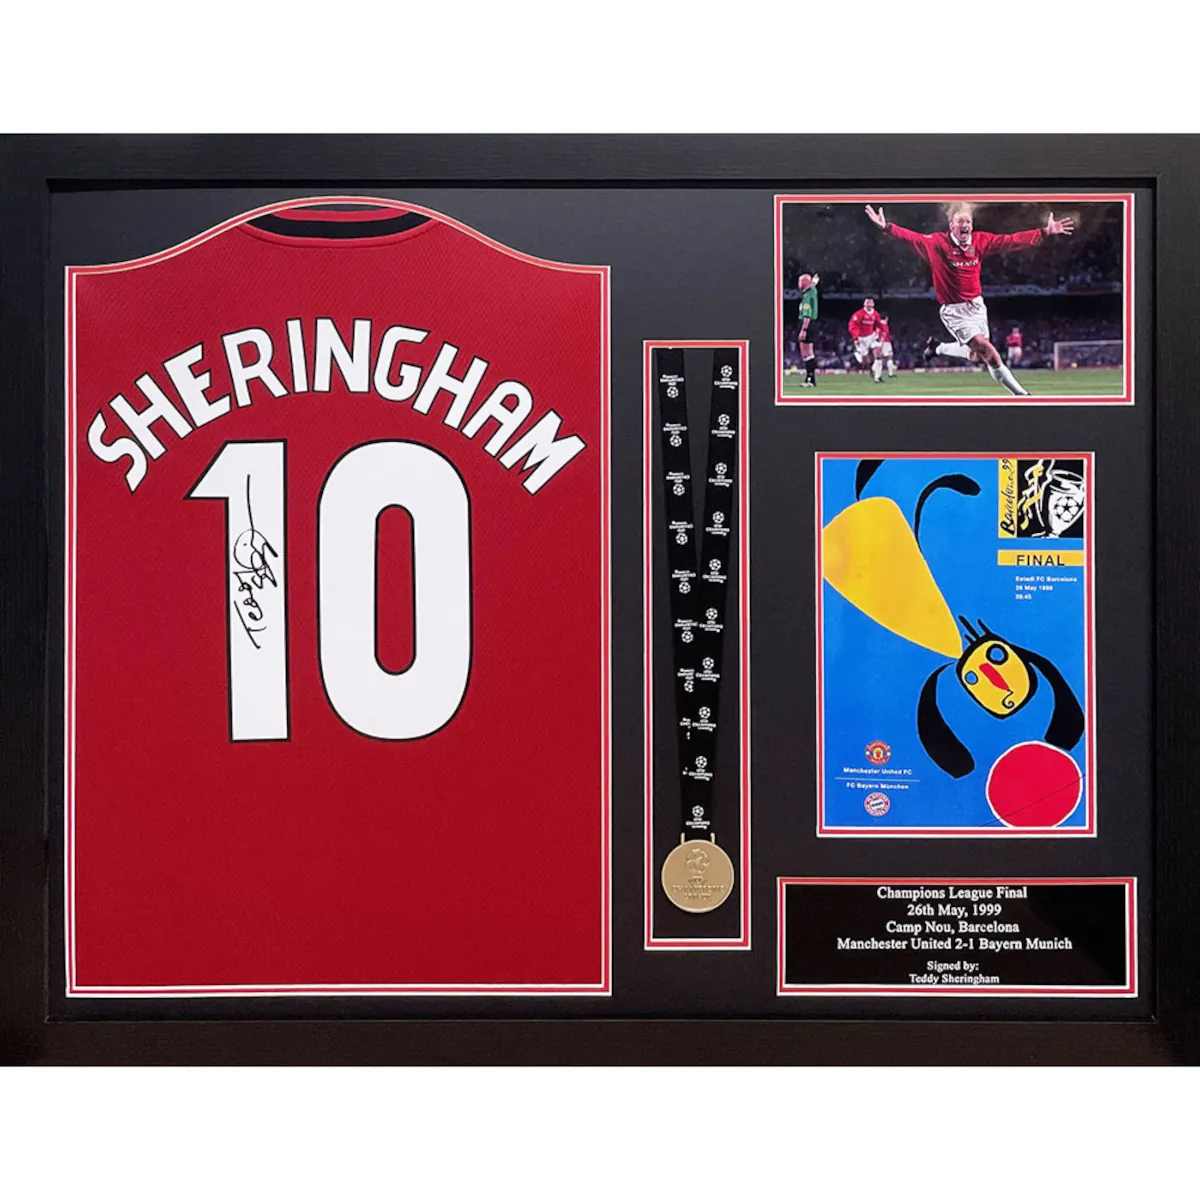 TM-00437 Manchester United F.C. Teddy Sheringham Framed Signed 2019-2020 Season Replica Football Shirt & Medal